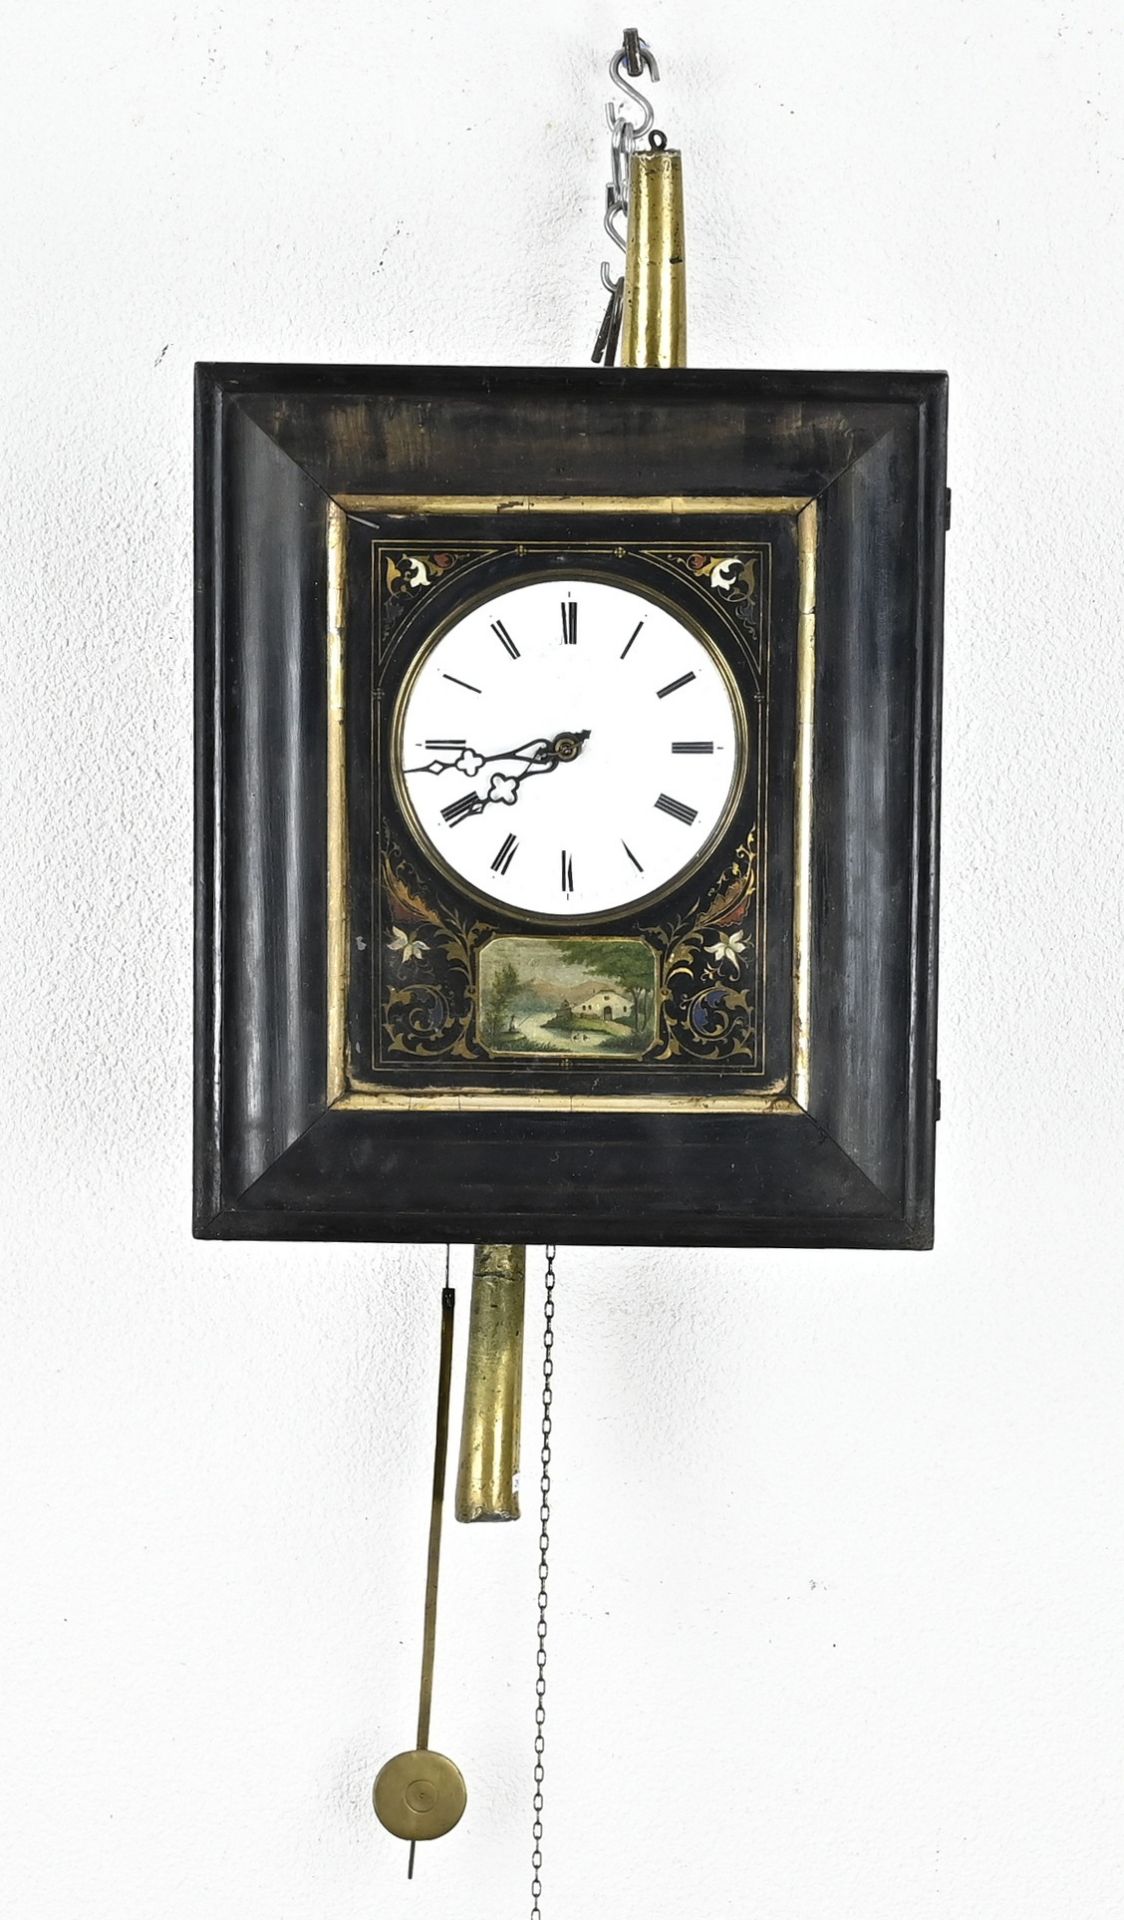 Schwarzwalder painting clock, 1850